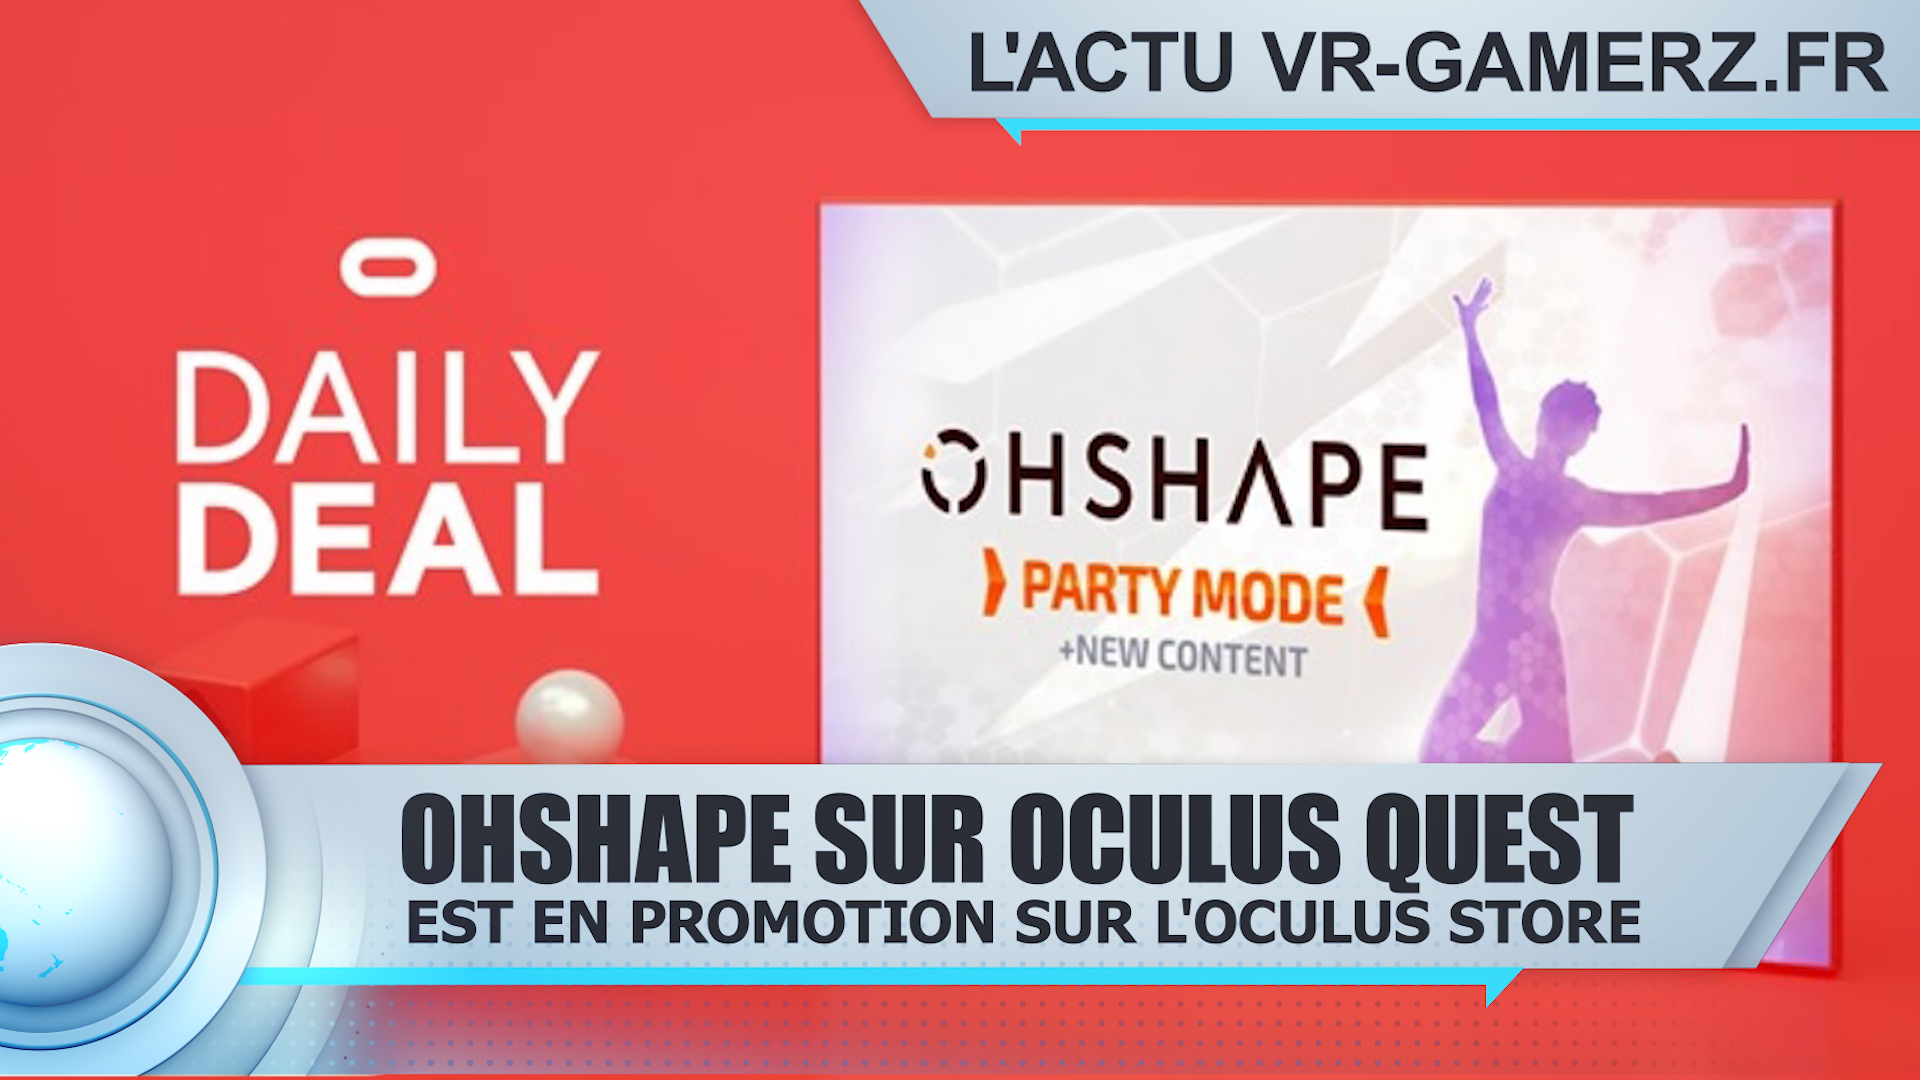 OhShape est en promotion sur Oculus quest